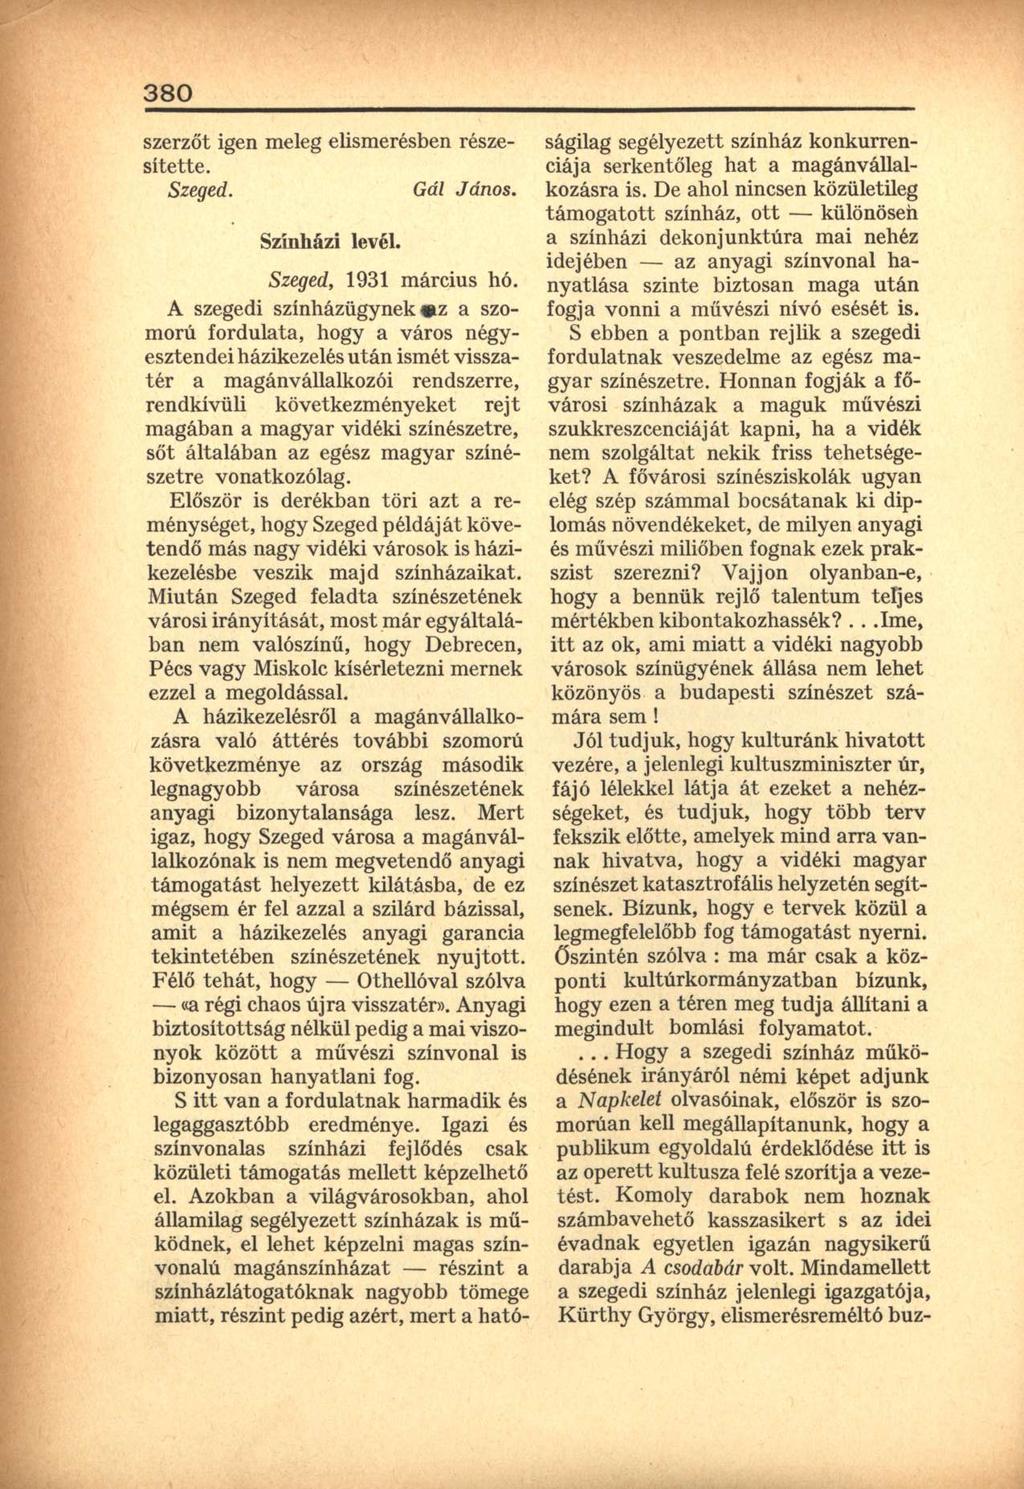 380 szerzőt igen meleg elismerésben részesítette. Szeged. Gál János. Színházi levél. Szeged, 1931 március hó.